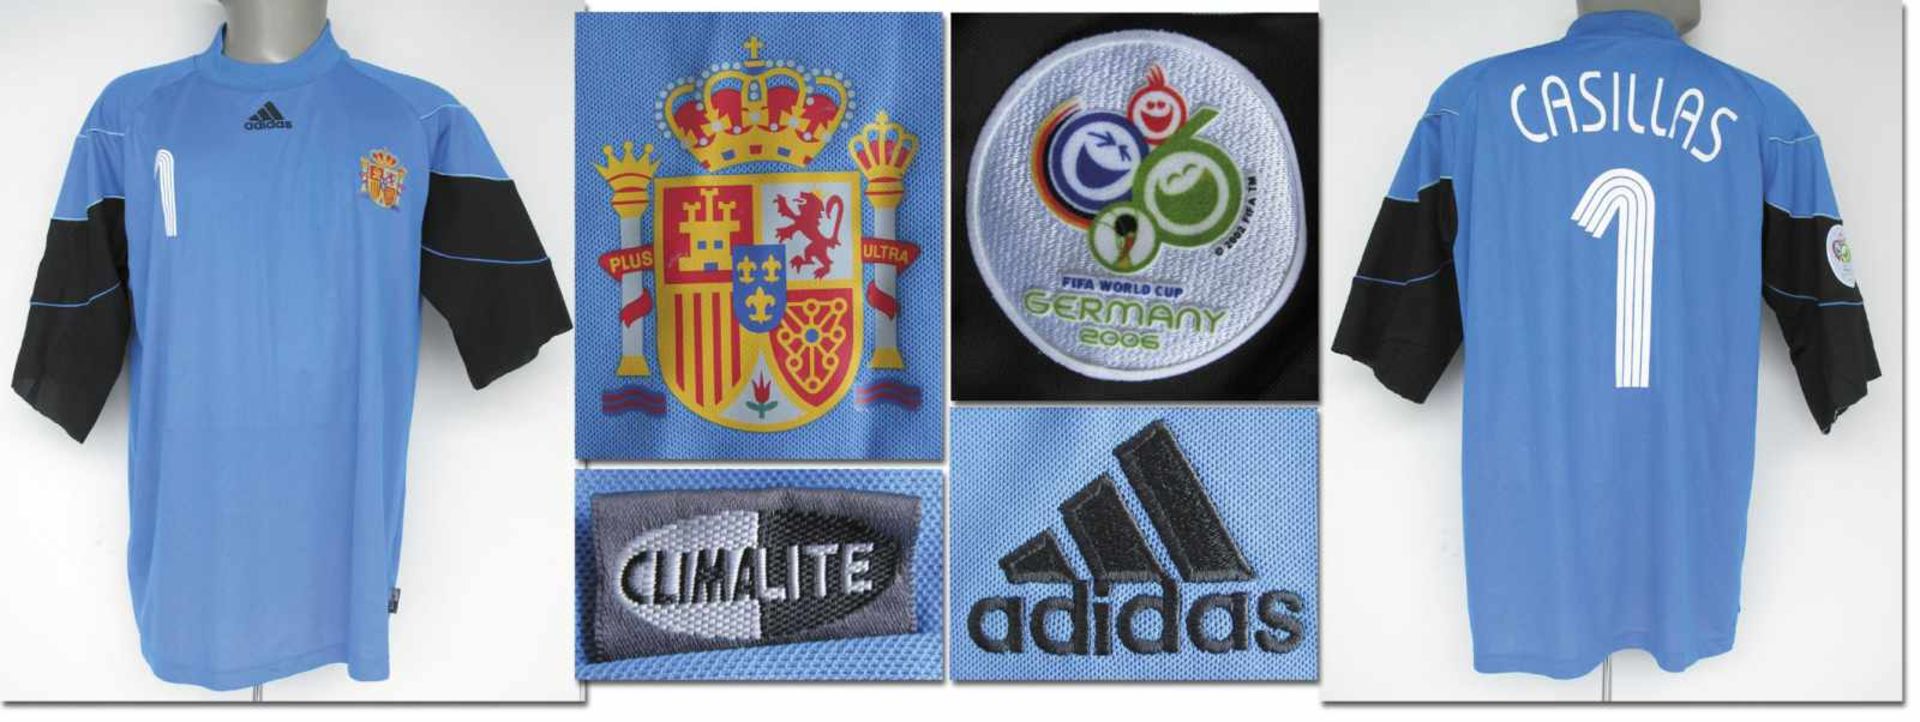 World Cup 2006 match worn football shirt Spain - Original match worn goalie shirt Spain with